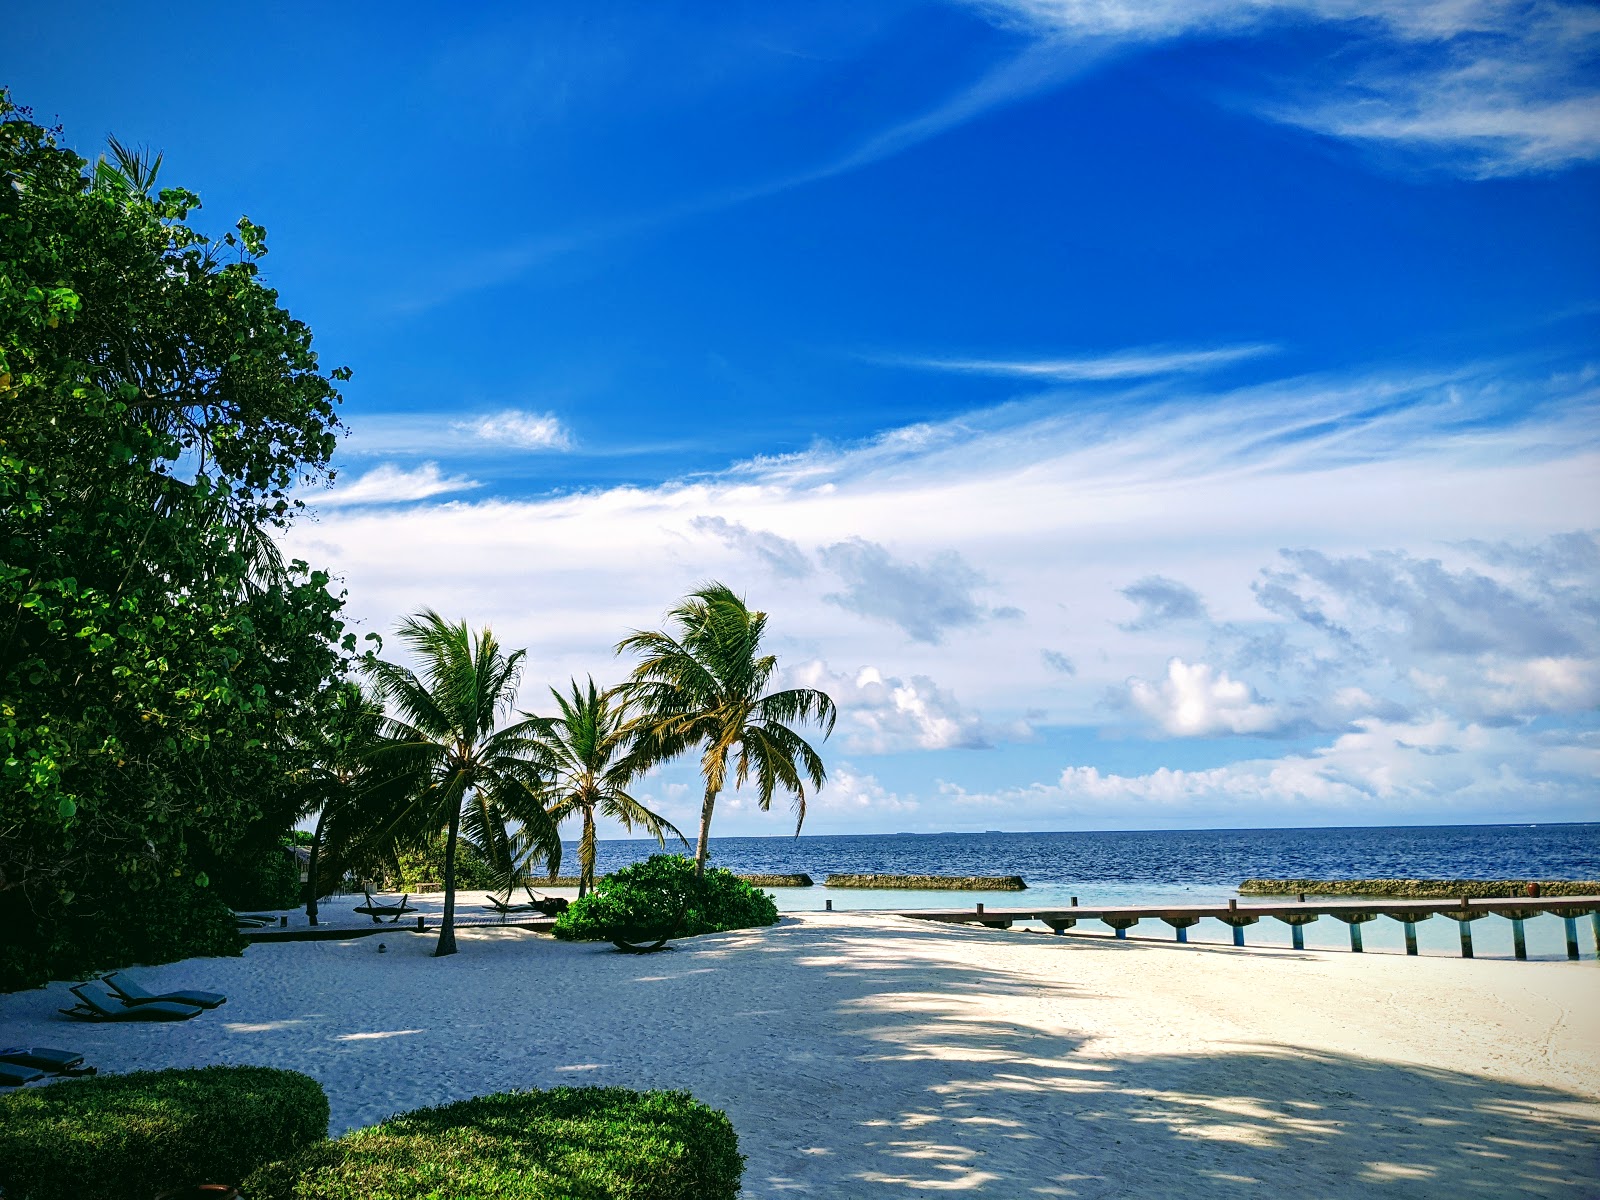 Foto von Coco Bodu Hithi Resort mit weißer sand Oberfläche